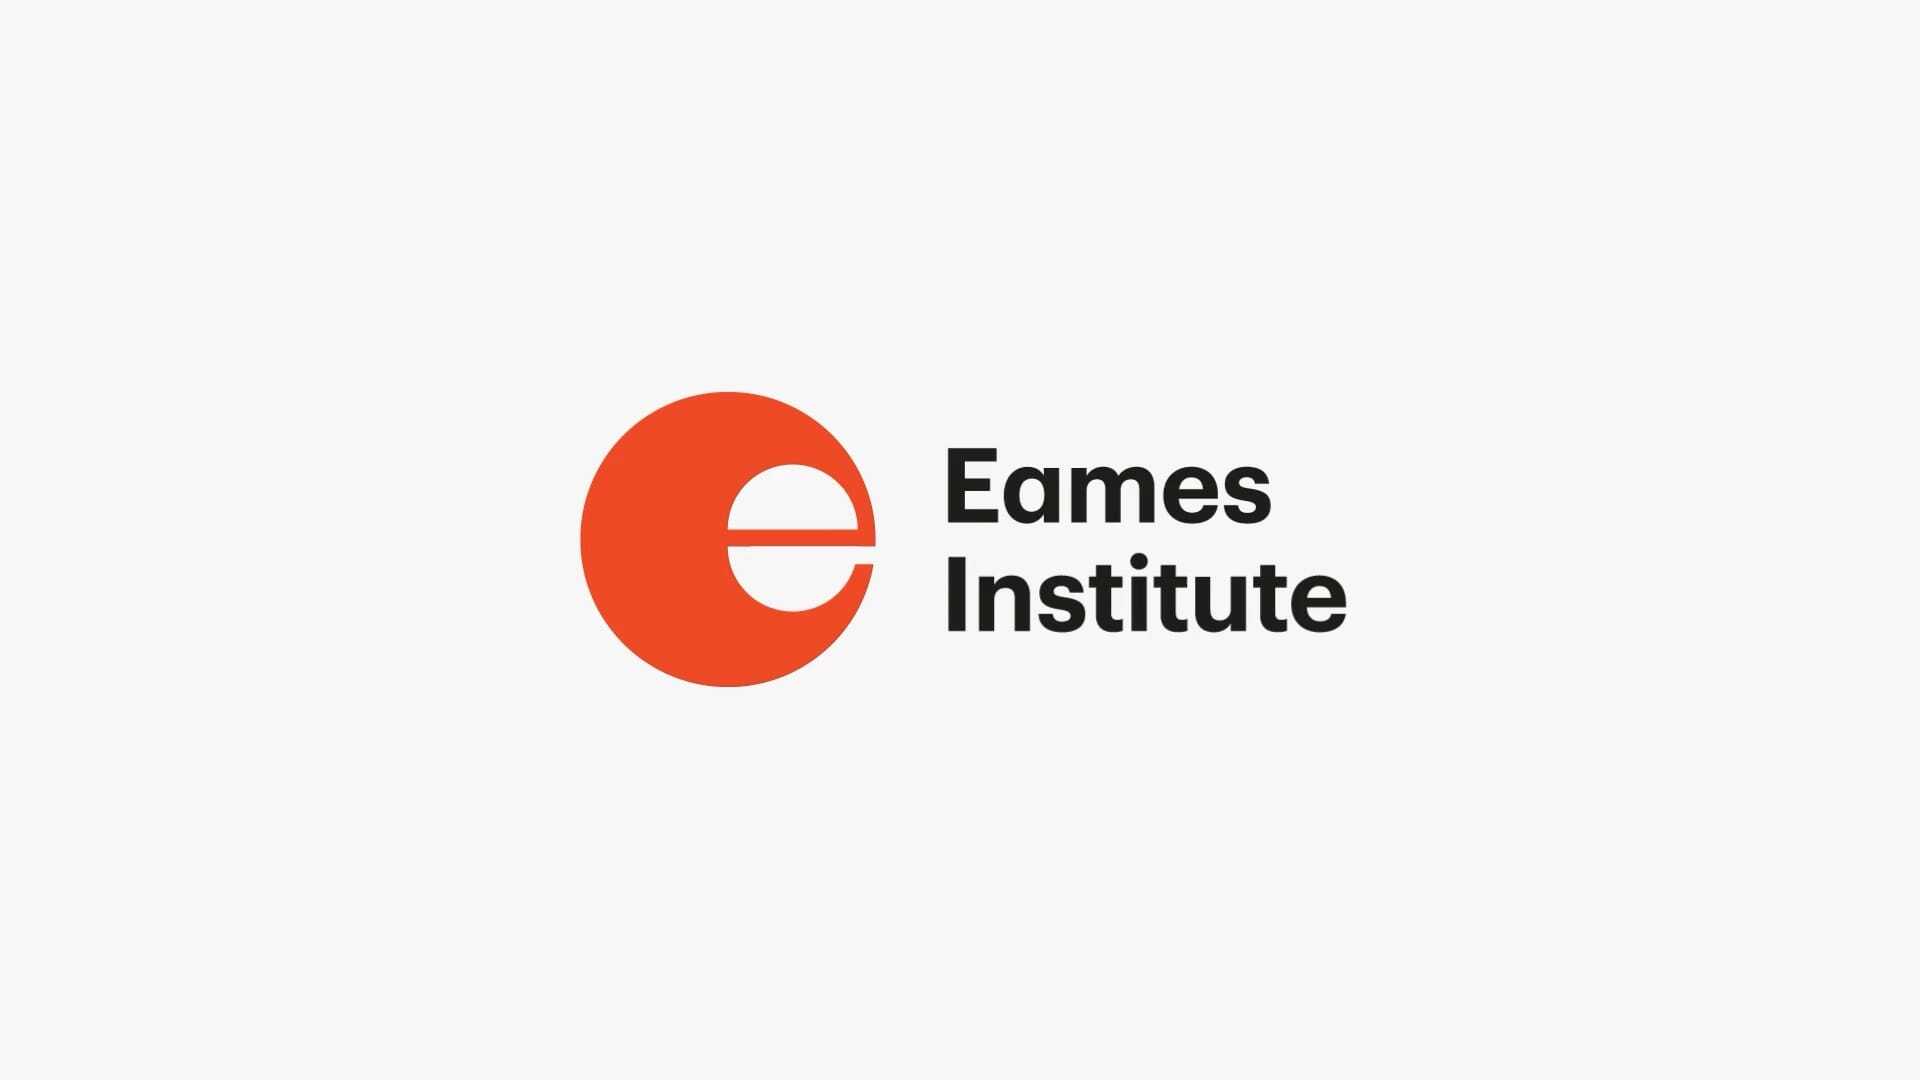 Eames Institute